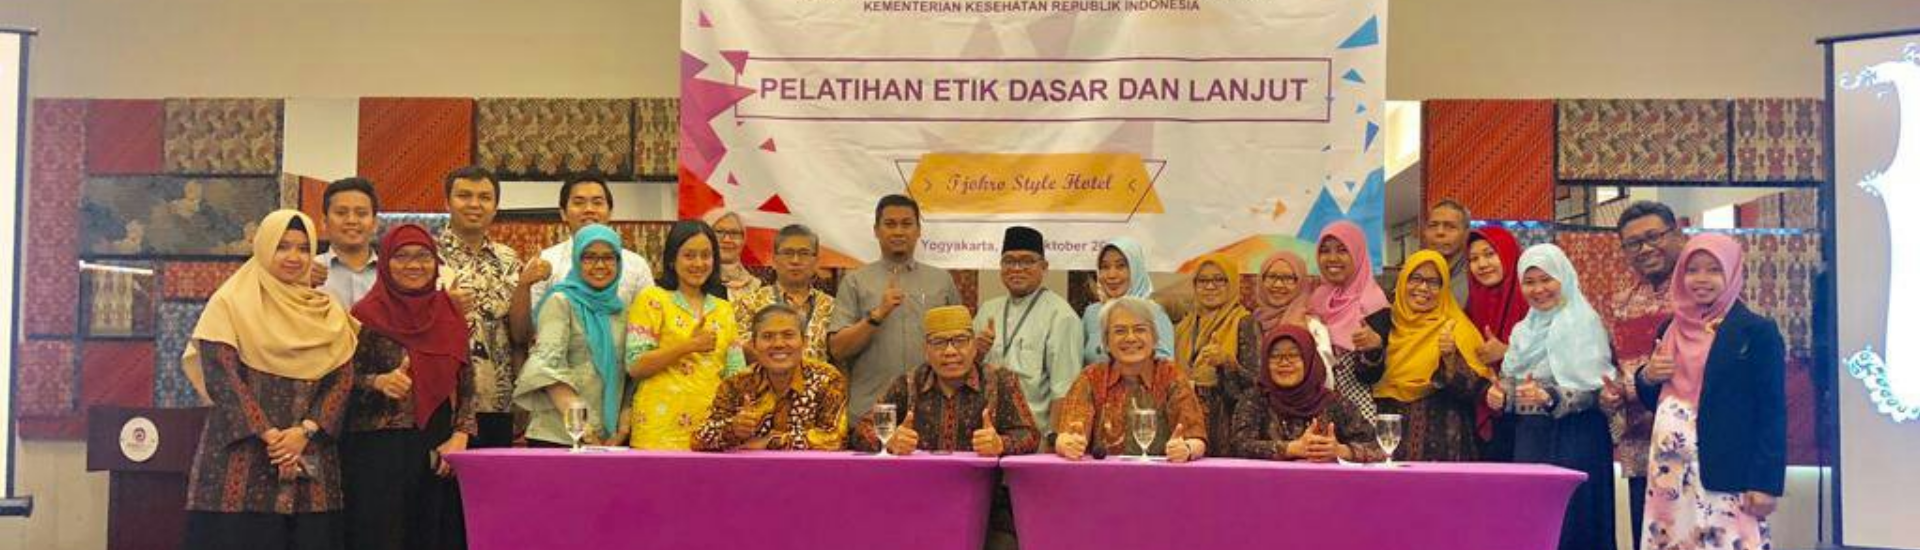 Pelatihan Etik Dasar dan Lanjut Komisi Etik Penelitian dan Pengembangan Kesehatan Nasional Kementrian Kesehatan Republik Indonesia Yogyakarta 3-5 Oktober 2018